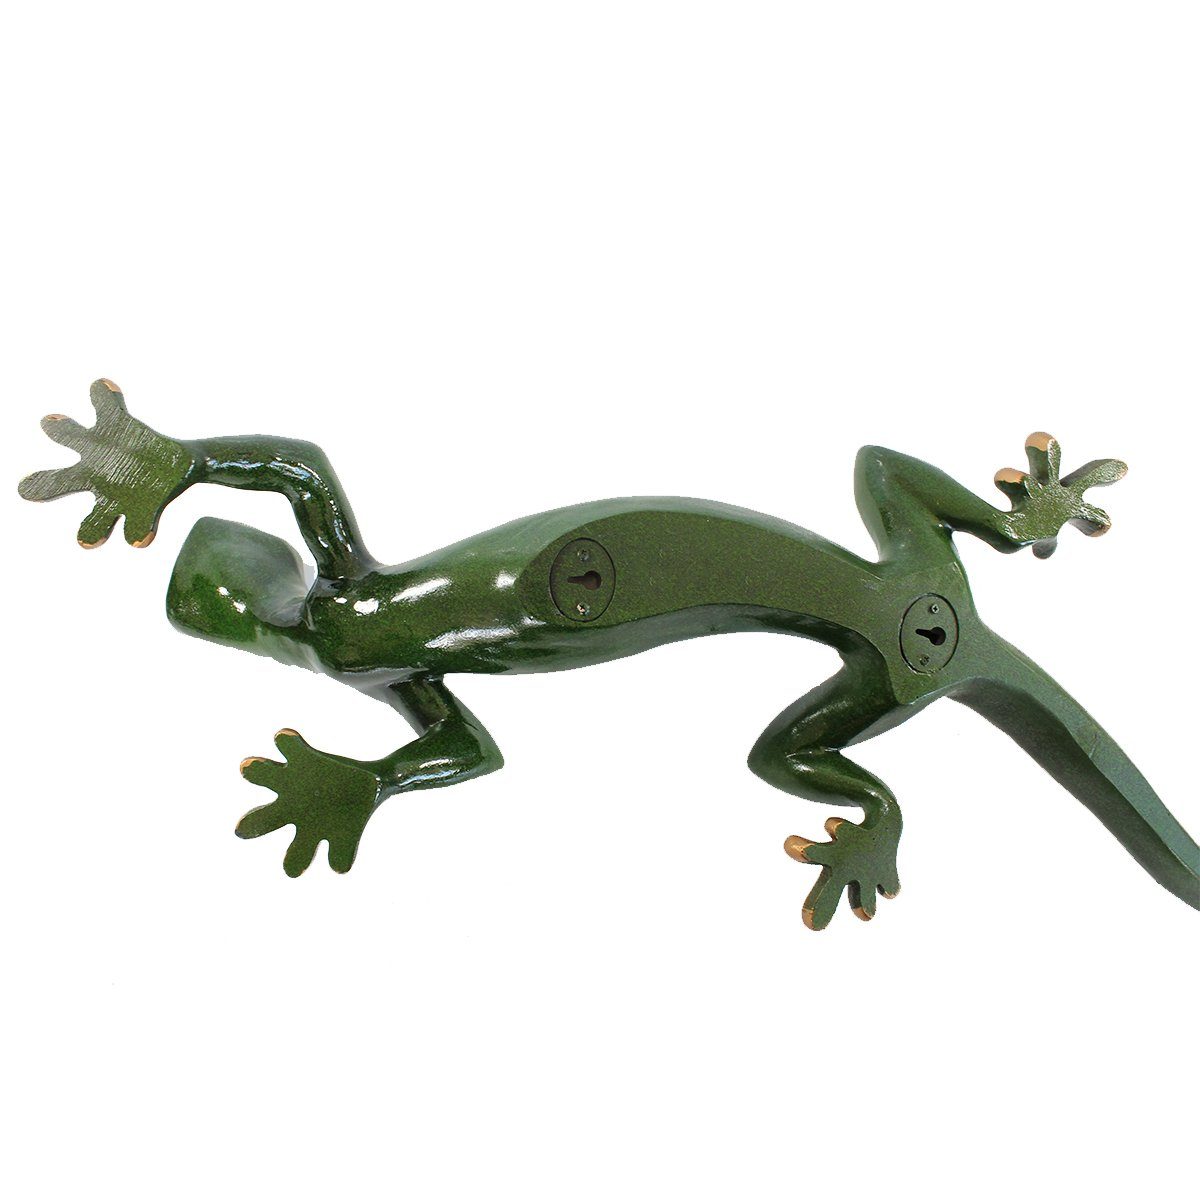 Deko grüne Figur Handbemalt, Salamander glänzende Tierfigur XL Wanddeko Reptil Oberfläche, Gartenfigur Wanddeko, Echse Figur colourliving